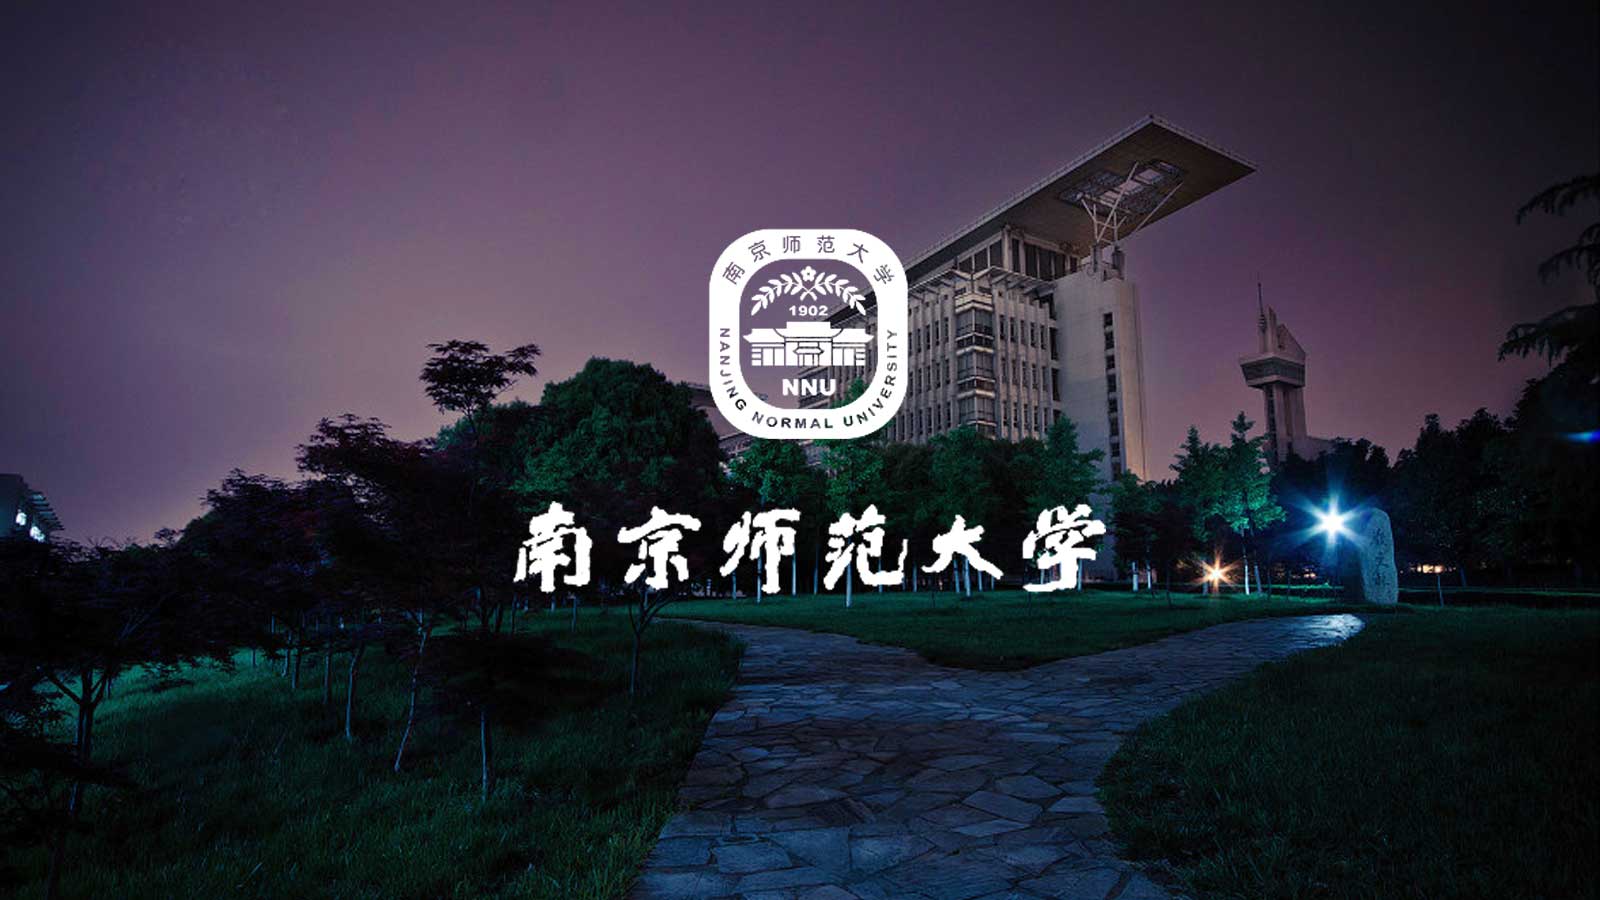 南京师范大学校徽壁纸图片